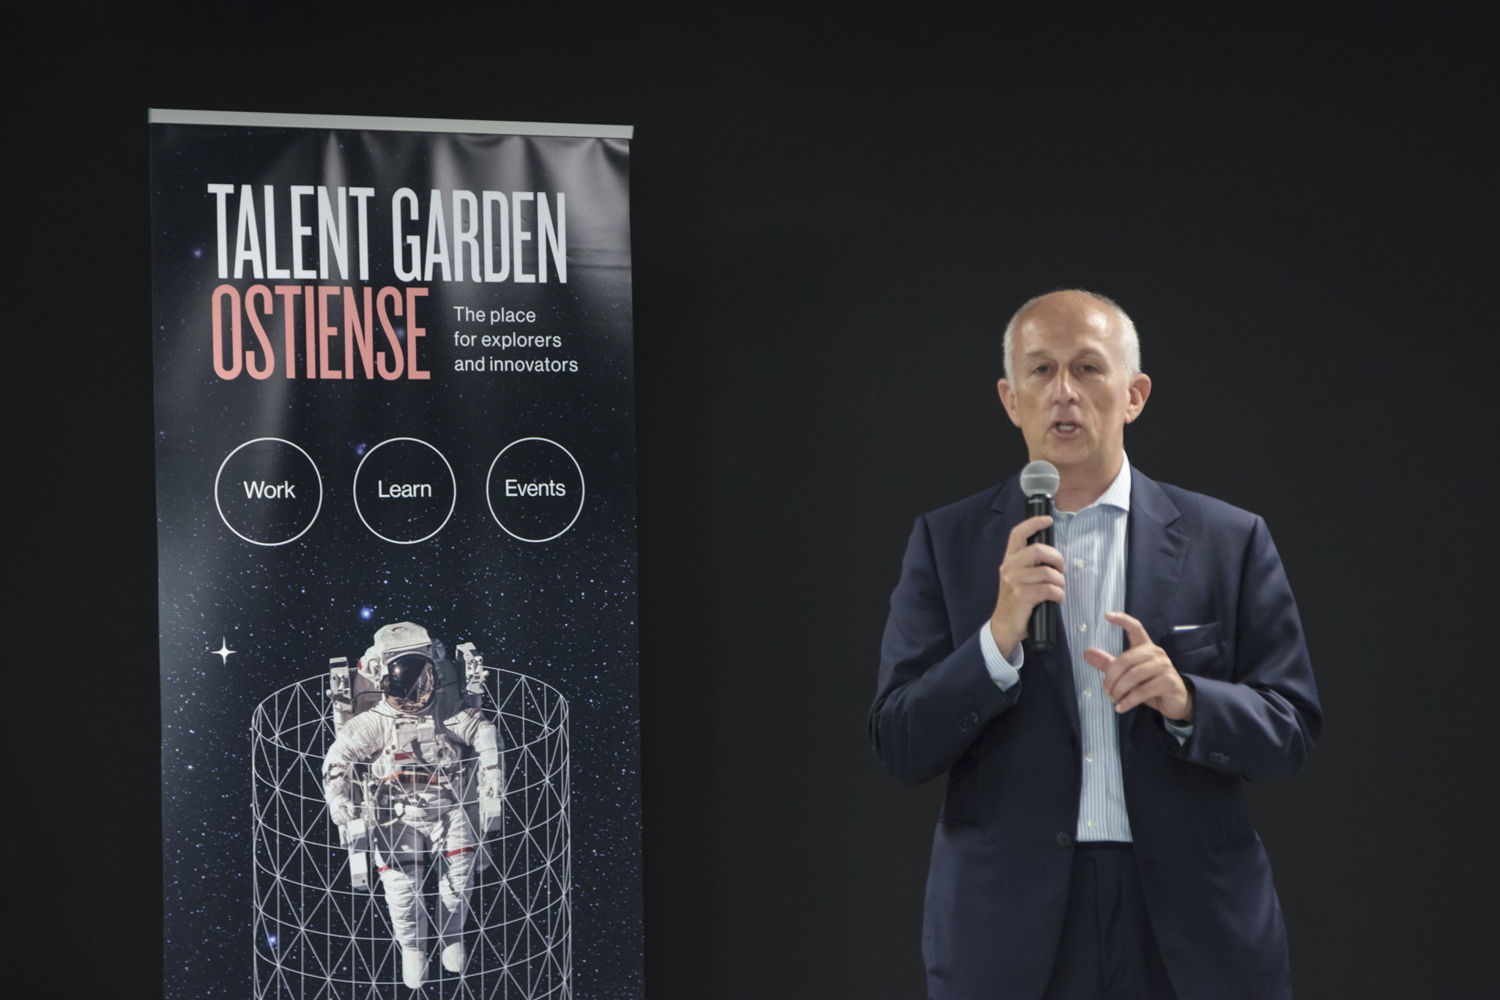  Alberto Luna, Senior Partner Talent Garden